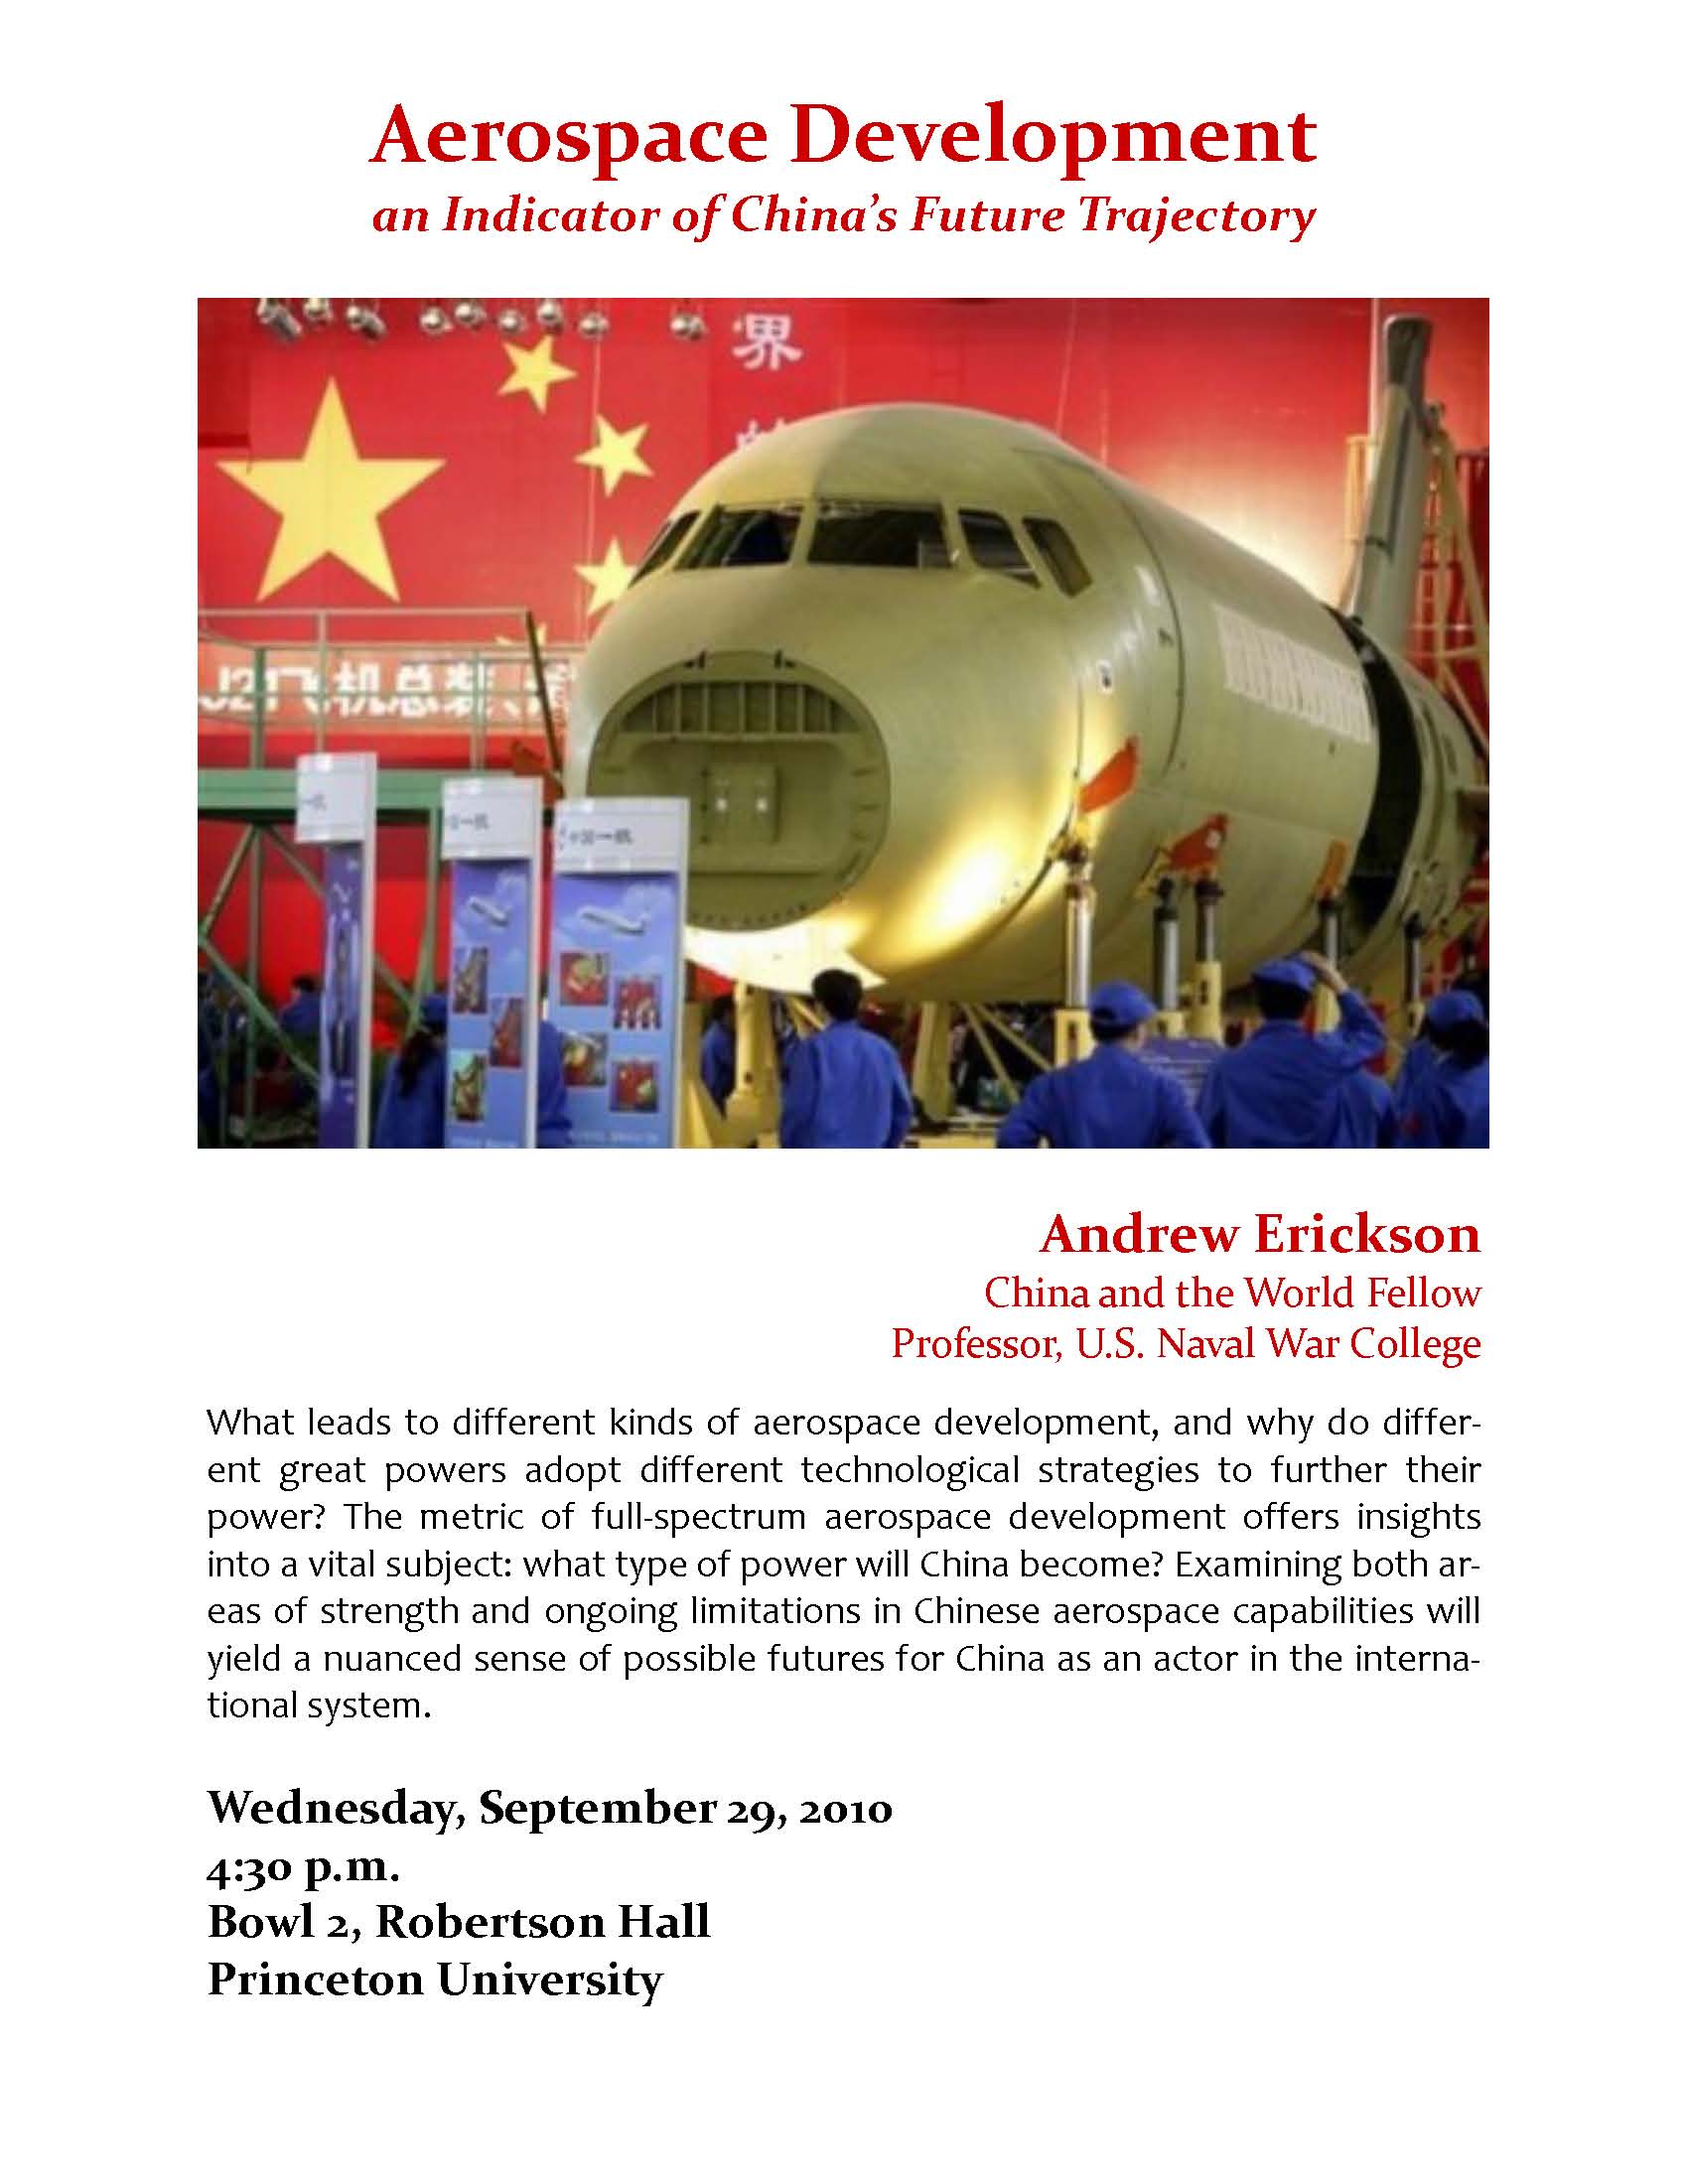 Princeton University--Aerospace Development Lecture--Details